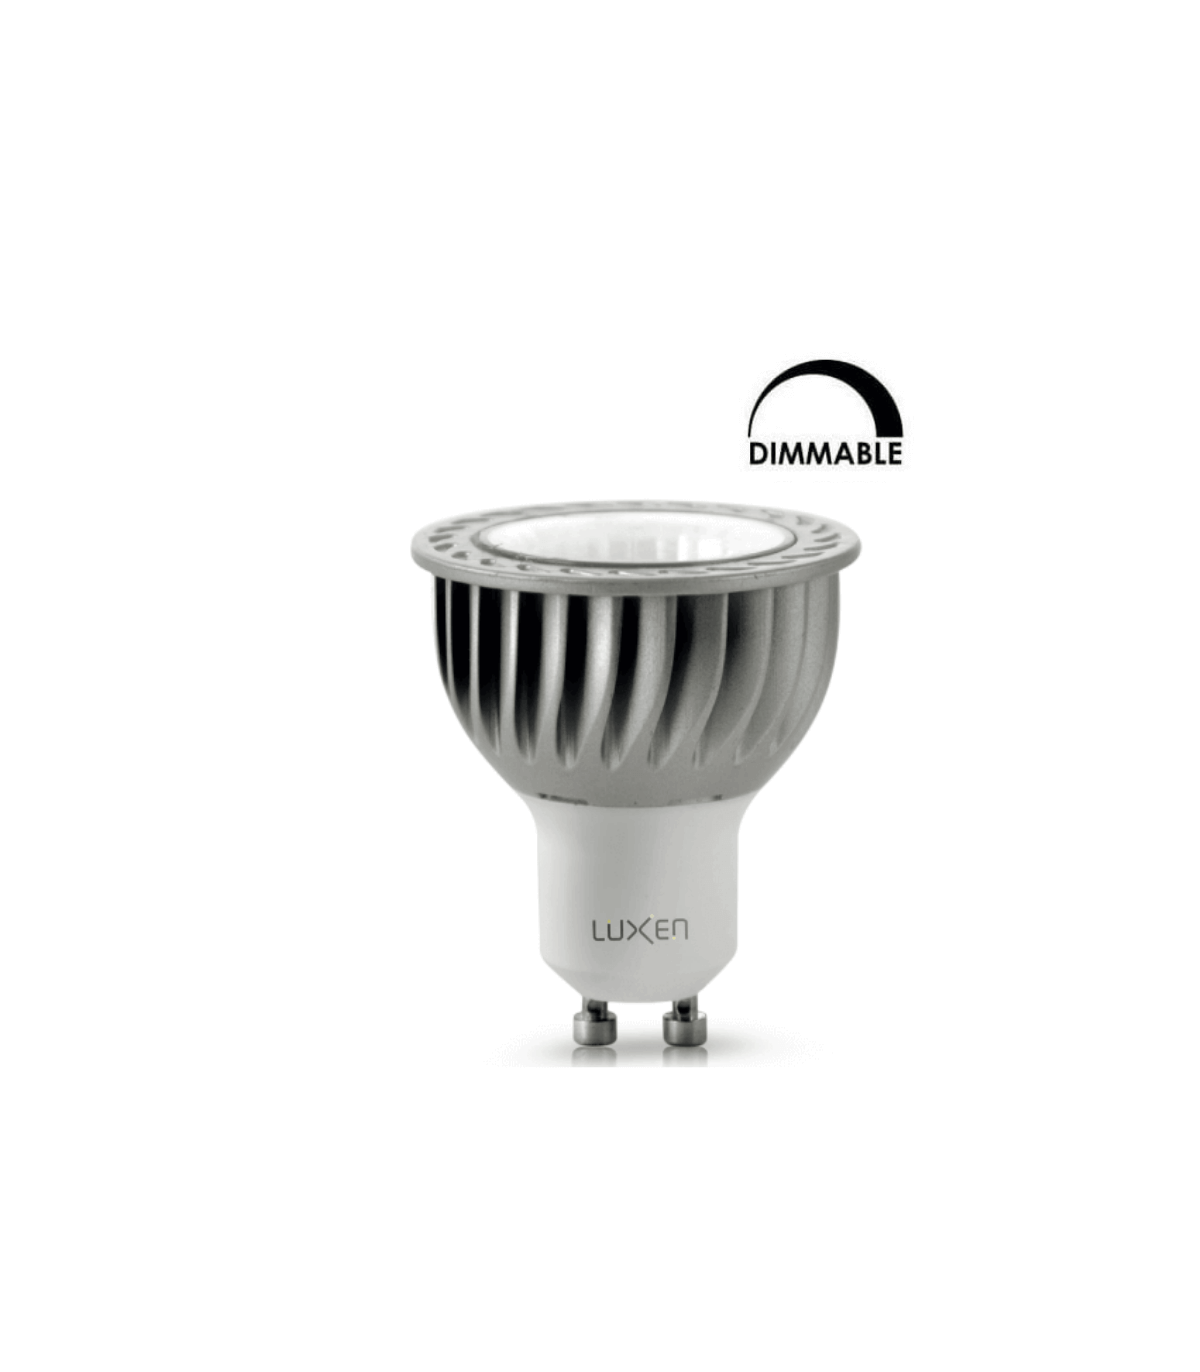 Ampoule LED spot, culot GU5.3, consommation de 7W pour une équivalence de  50W, intensité lumineuse de 345 lumens, lumière blanc